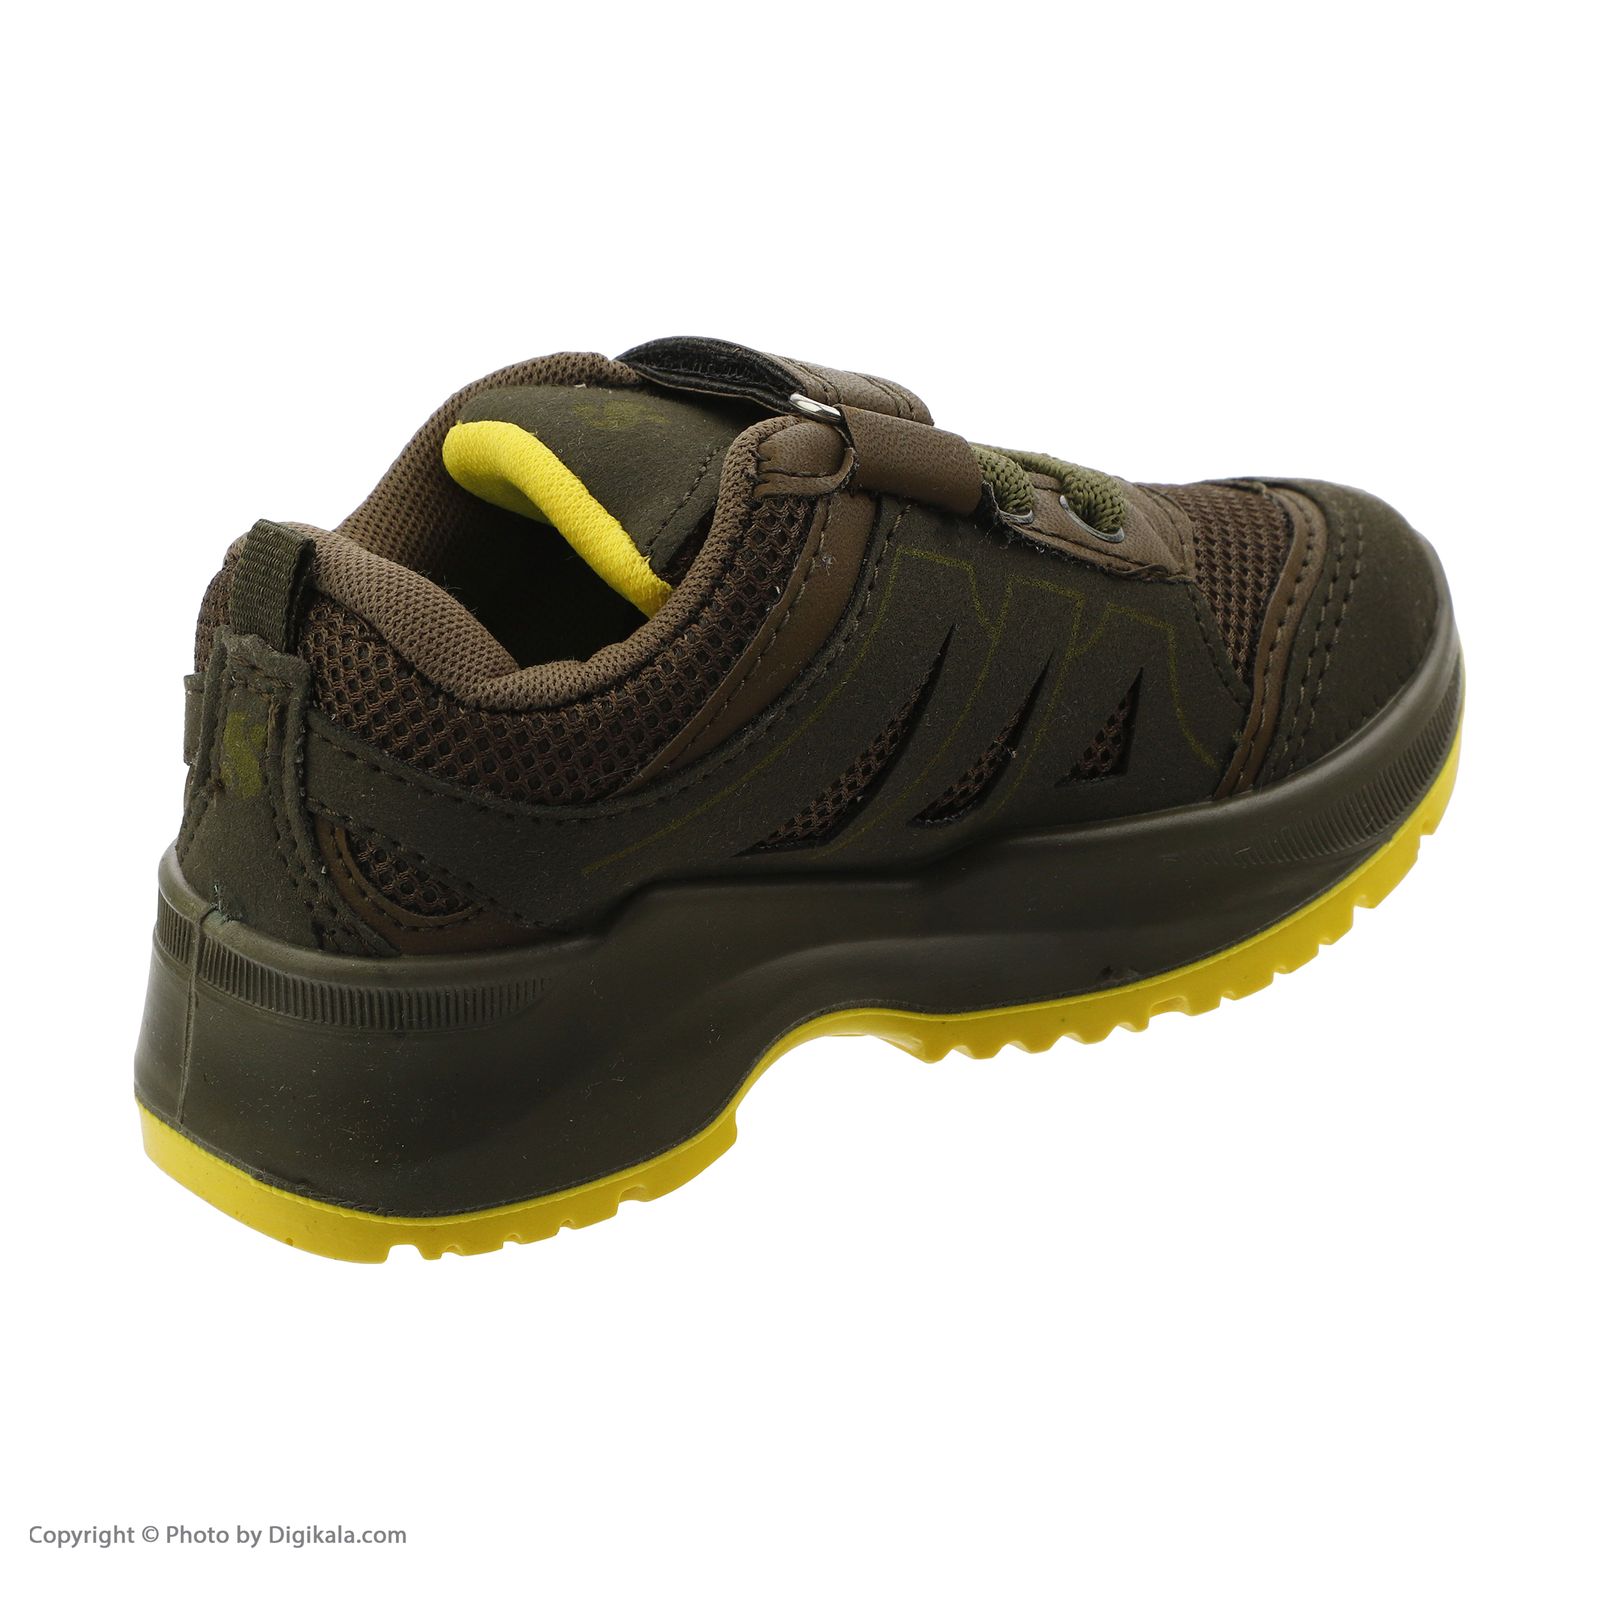  کفش مخصوص پیاده روی بچگانه شیما مدل 32662-36 -  - 5